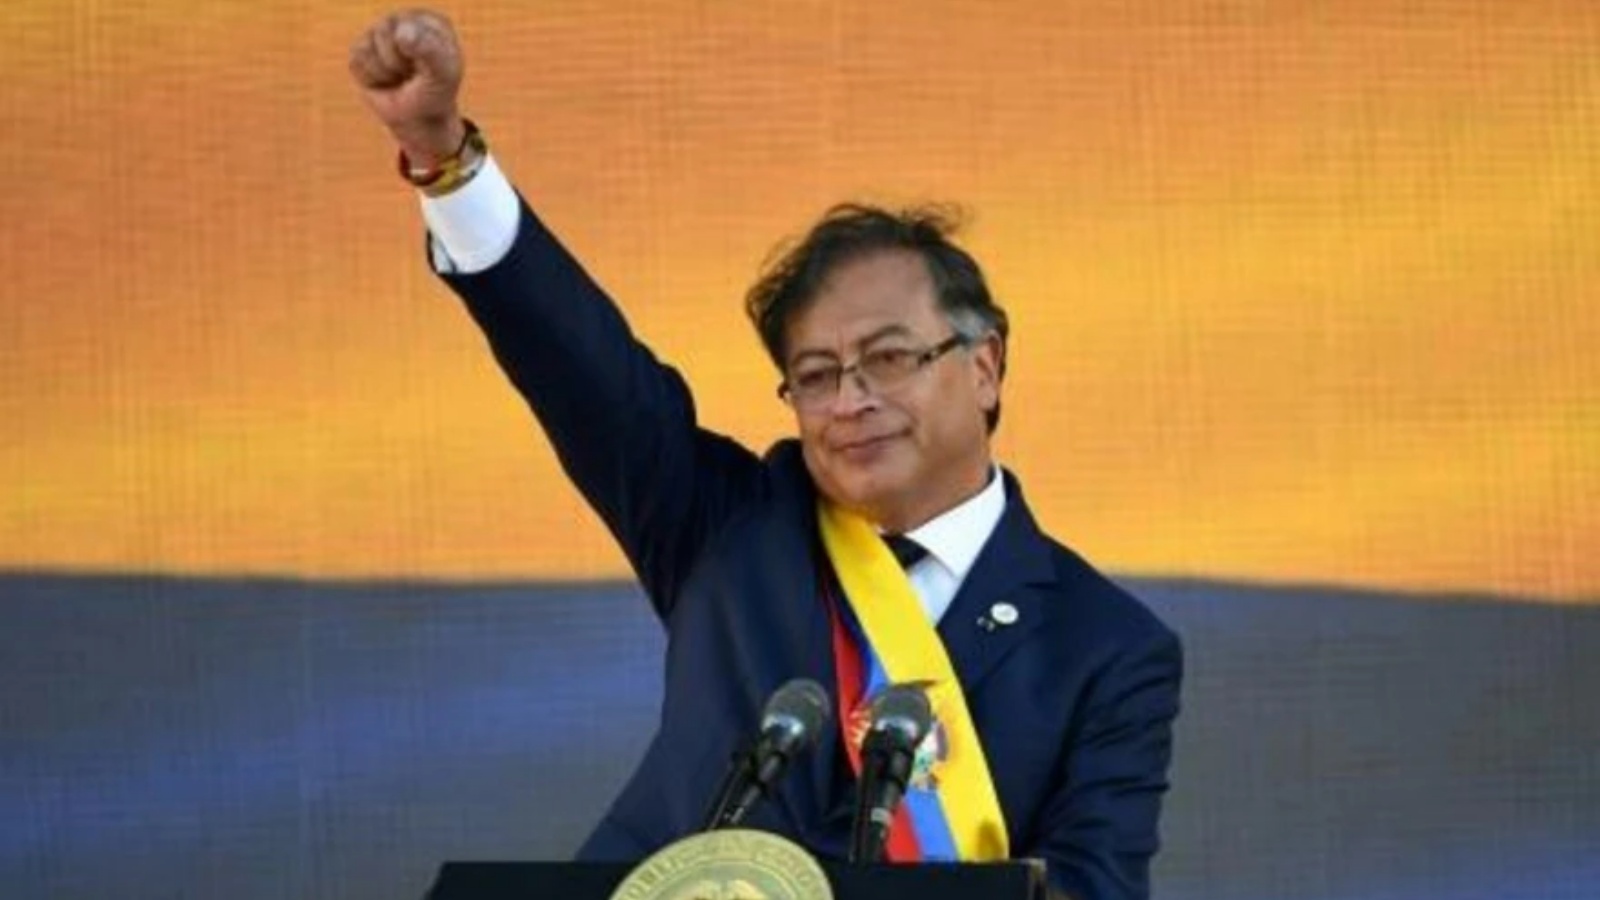 الرئيس الكولومبي غوستافو بيترو في ختام مراسم تنصيبه في بوغوتا في 7 أغسطس 2022 